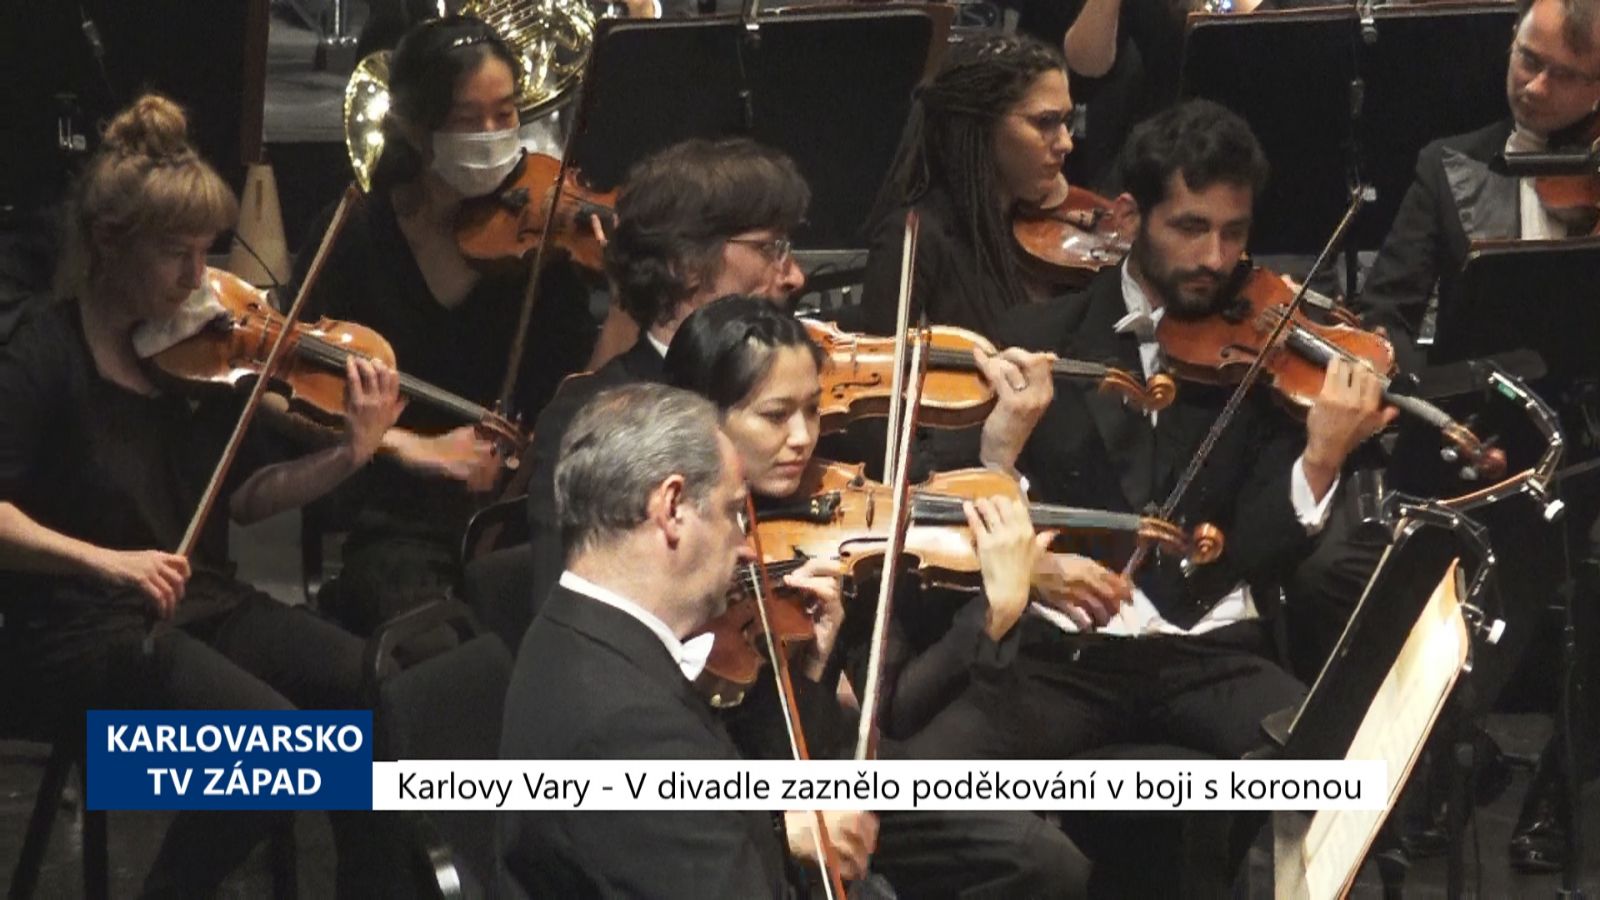 Karlovy Vary: V divadle zaznělo poděkování v boji s koronou (TV Západ)